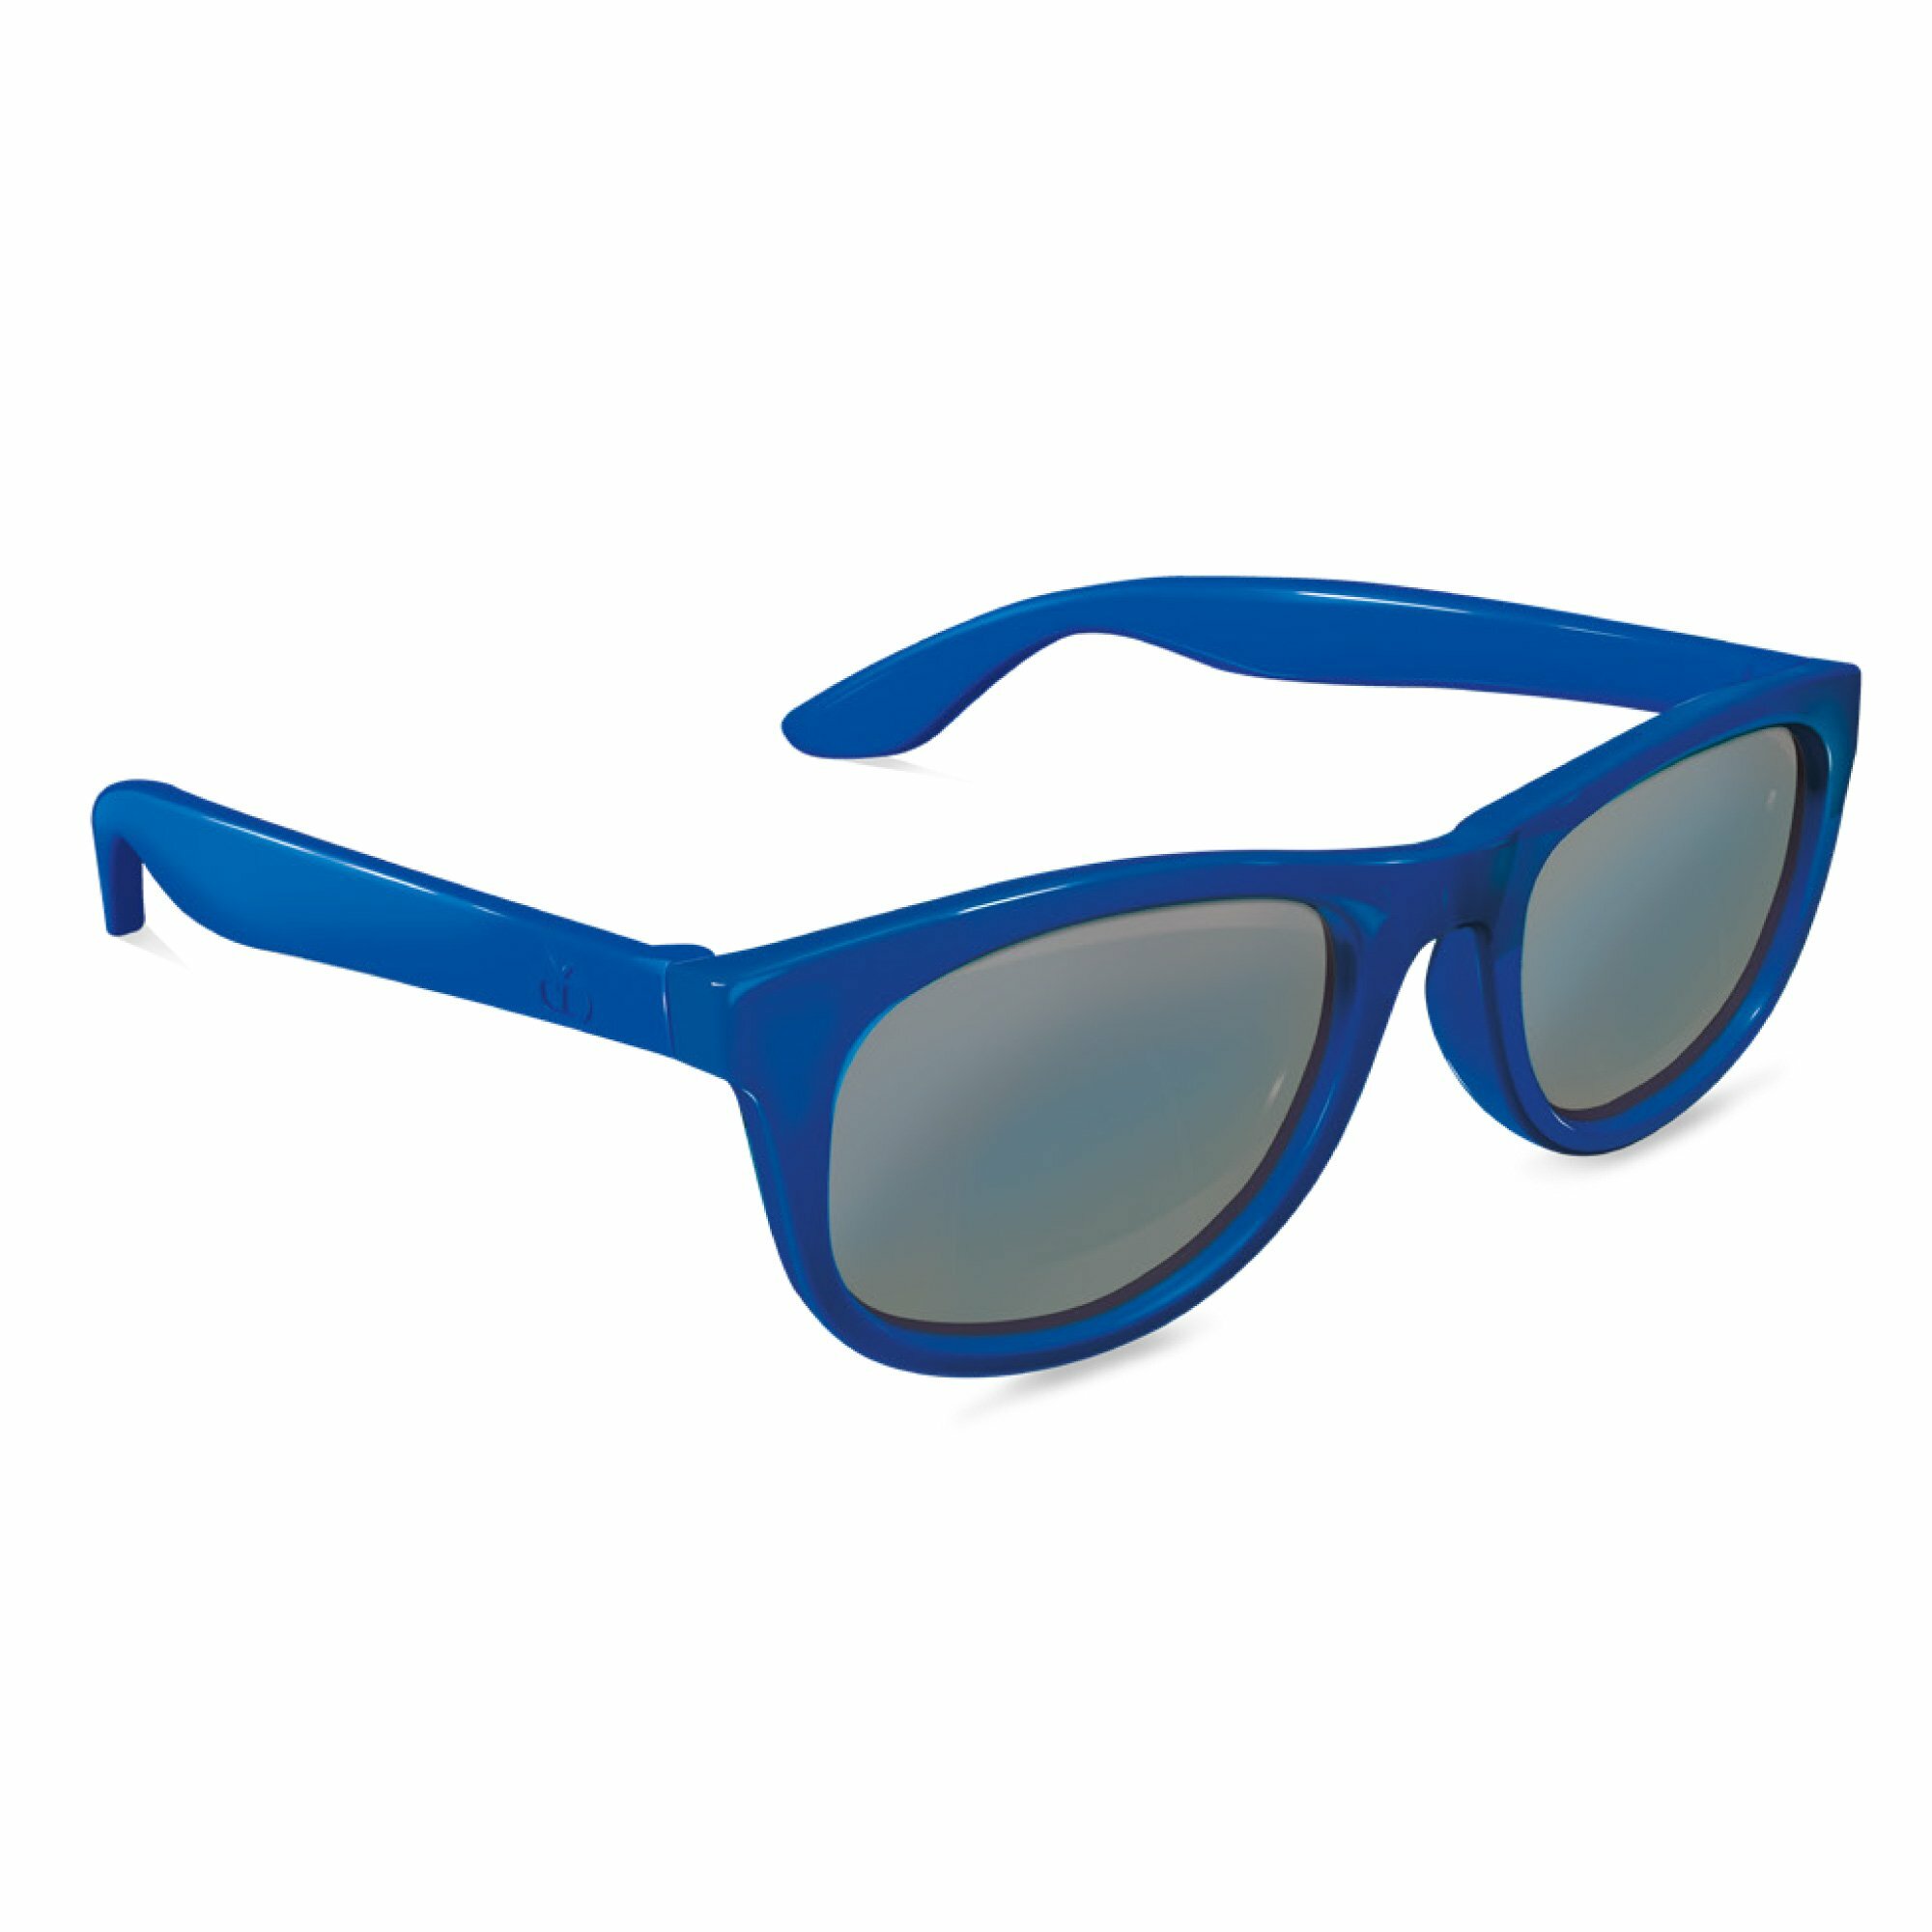 Visiomed France Miami Kids, slnečné okuliare pre deti od 4 do 6 rokov, modré